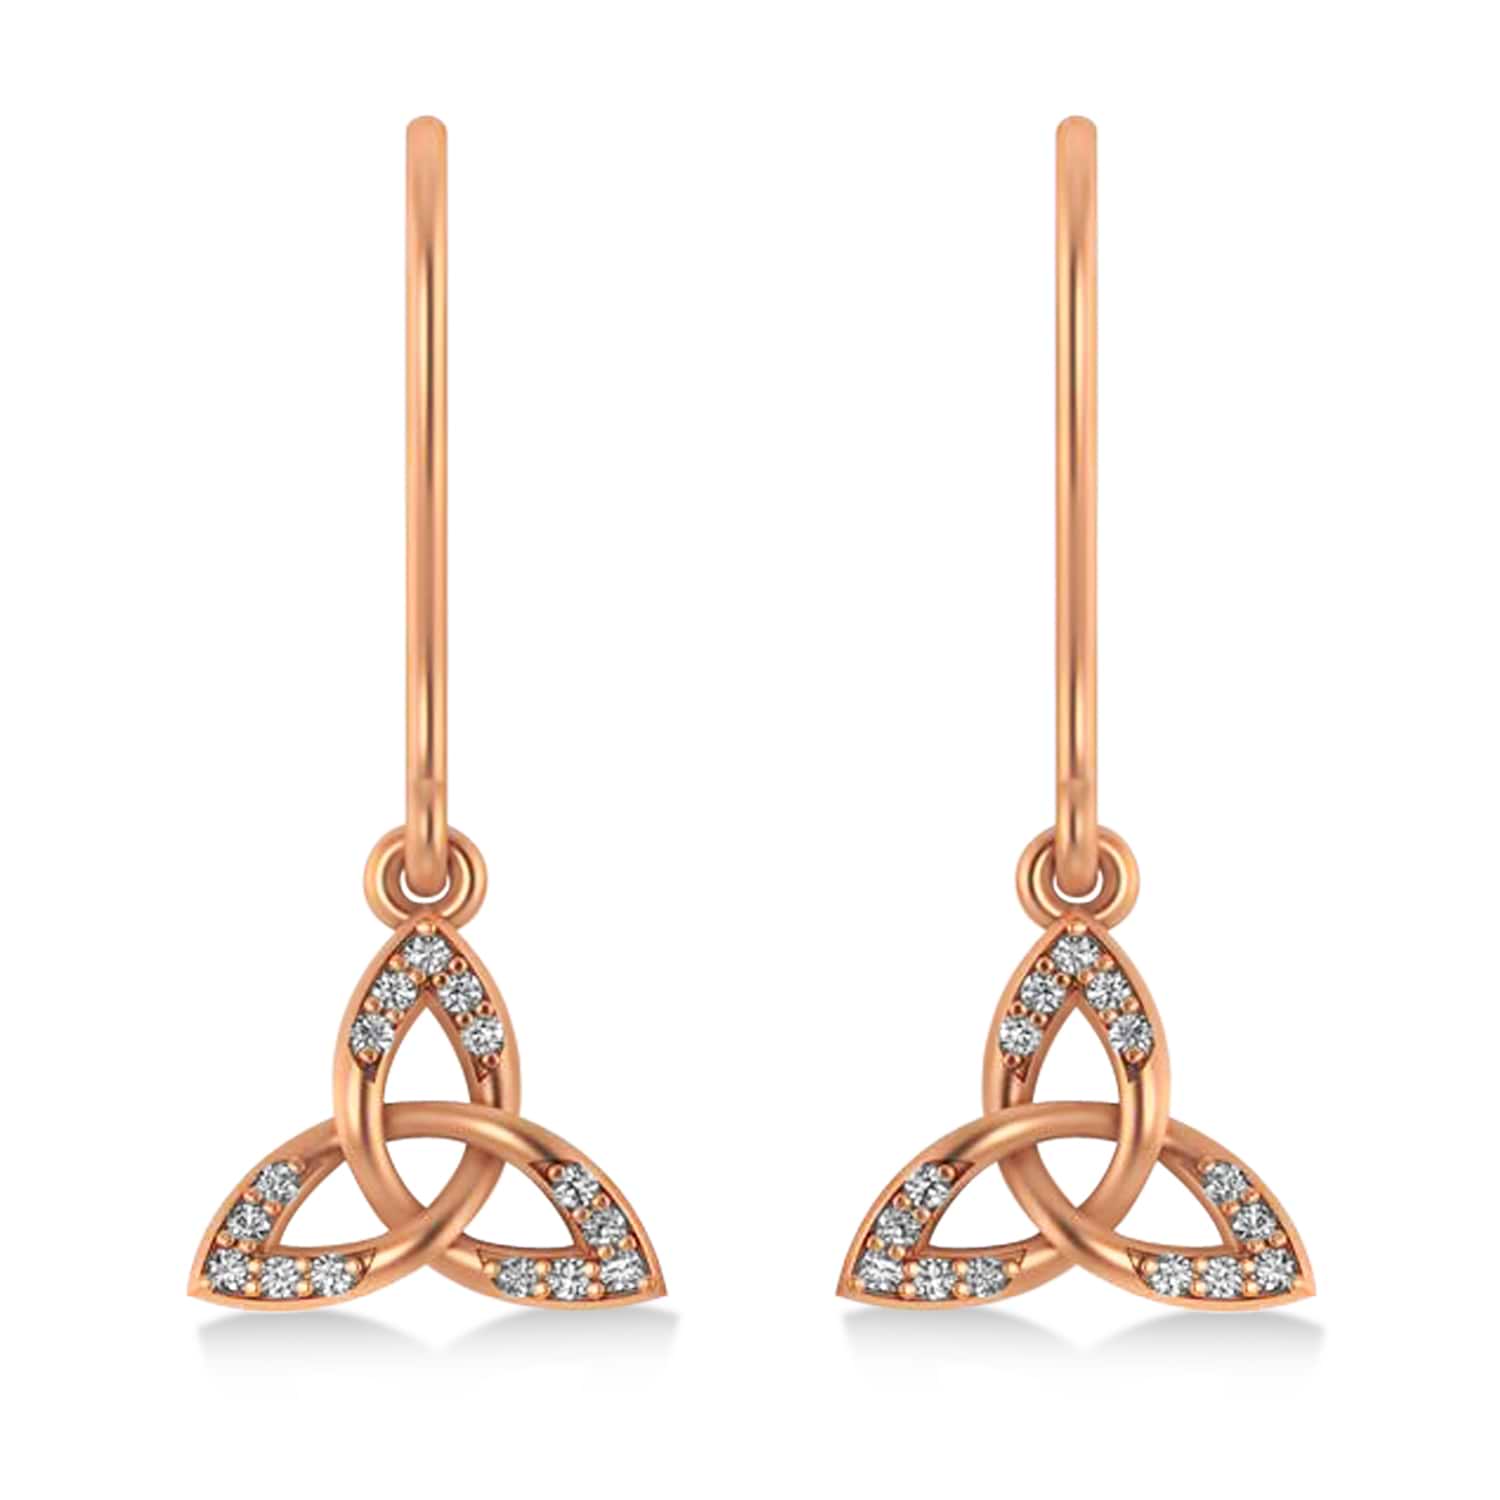 Diamond Celtic Knot Dangle Earrings 14k Rose Gold (0.15ct)